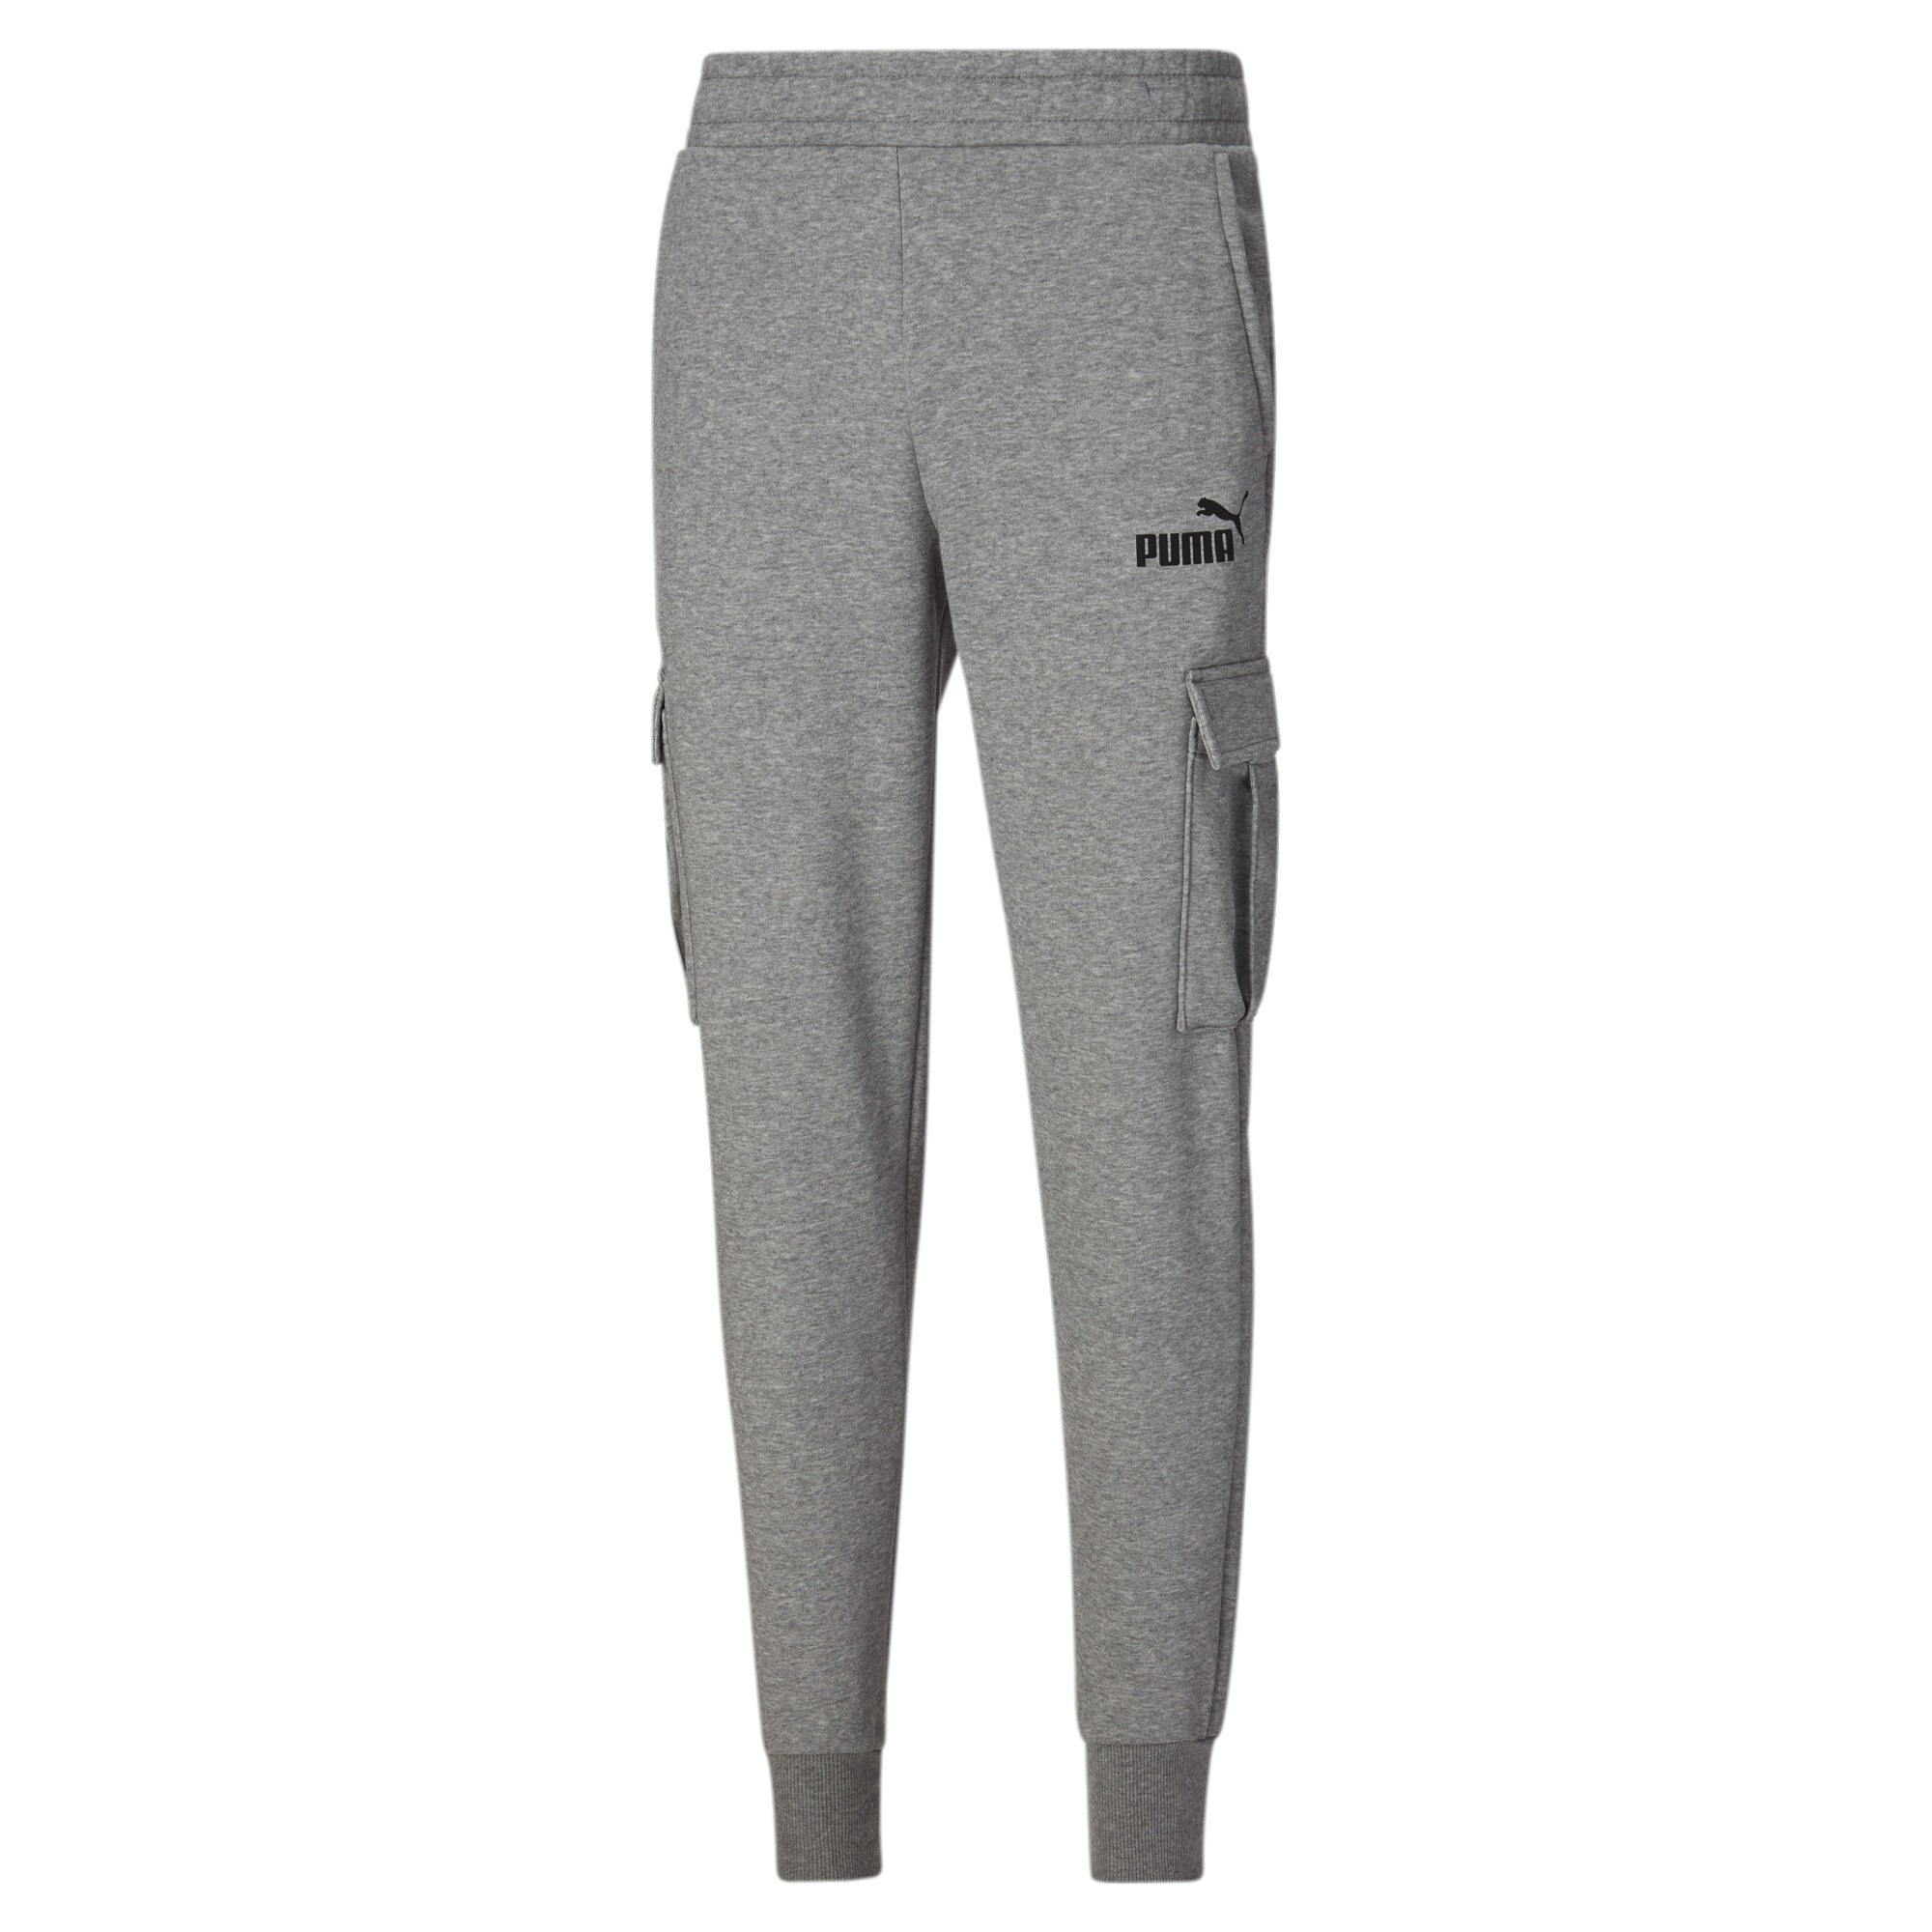 PUMA Size L Men's Essentials Pocket Pants - Medium Grey Heather 